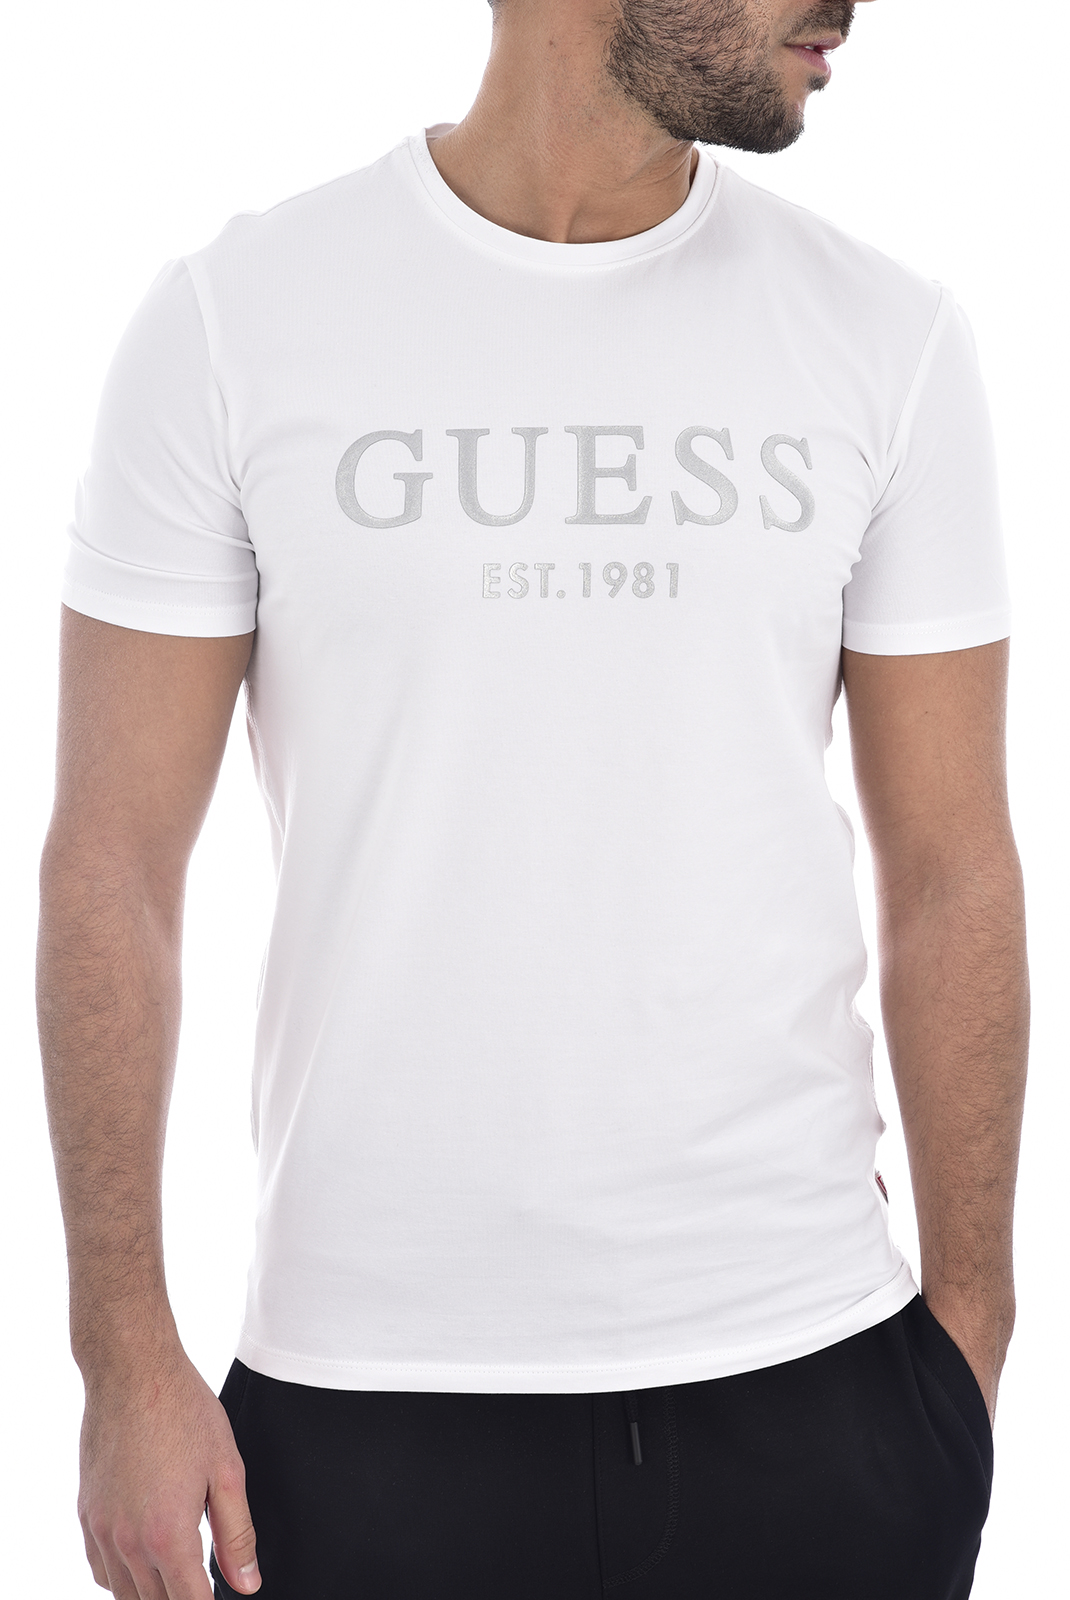 T shirt Guess Homme Est 1981 